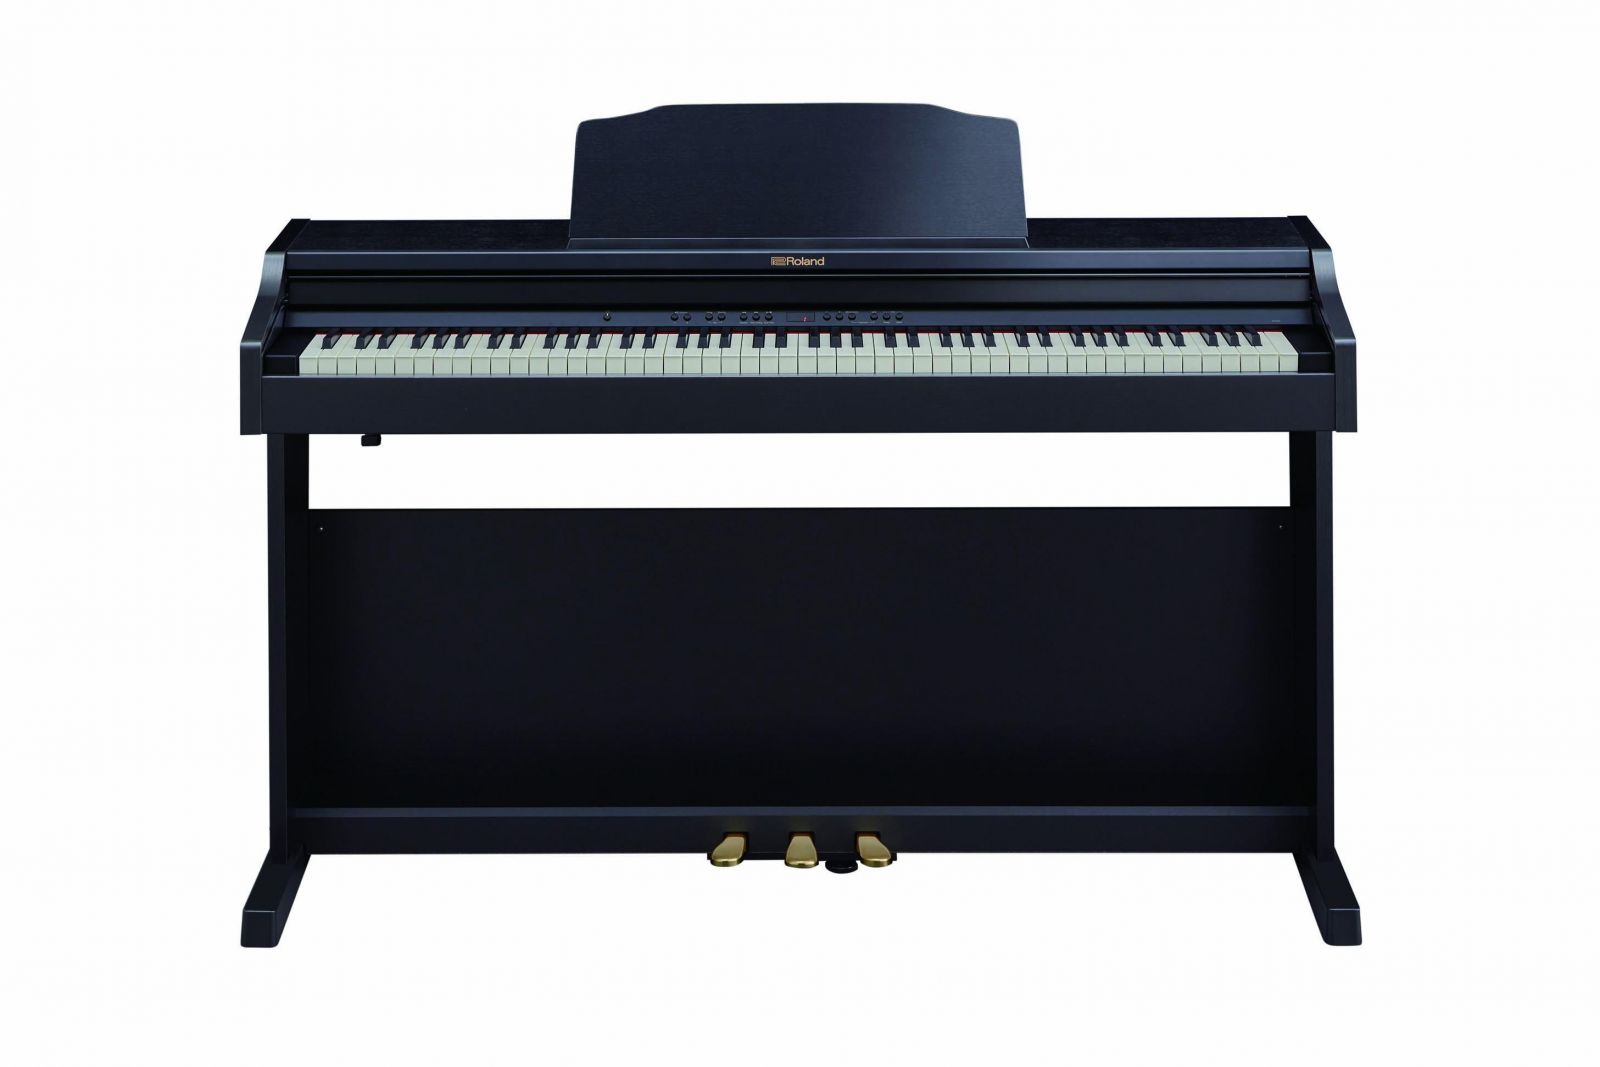 Đàn piano điện Roland RP-501R